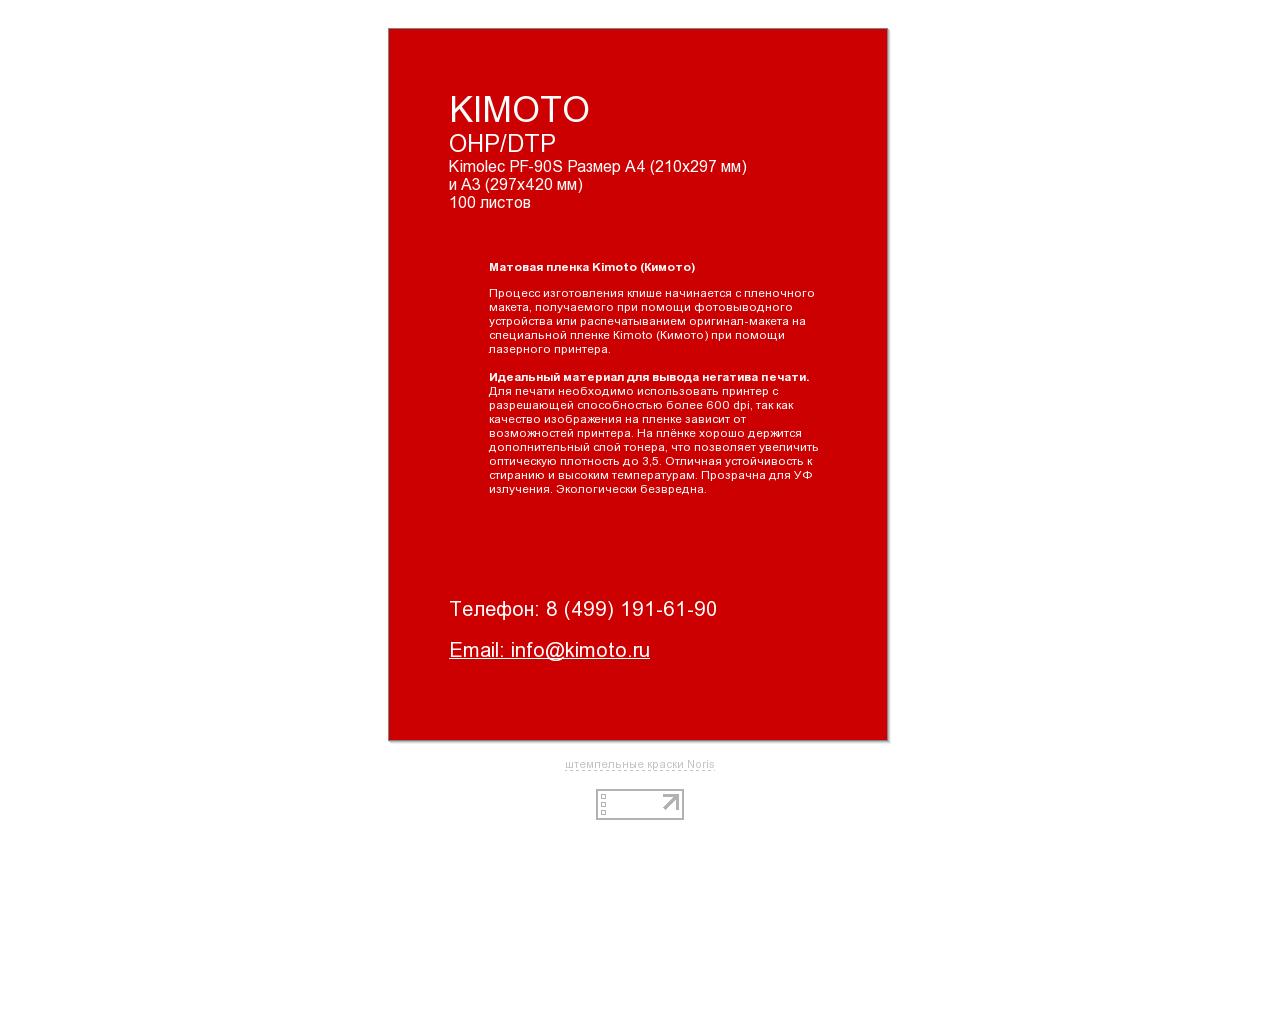 Изображение сайта kimoto.ru в разрешении 1280x1024